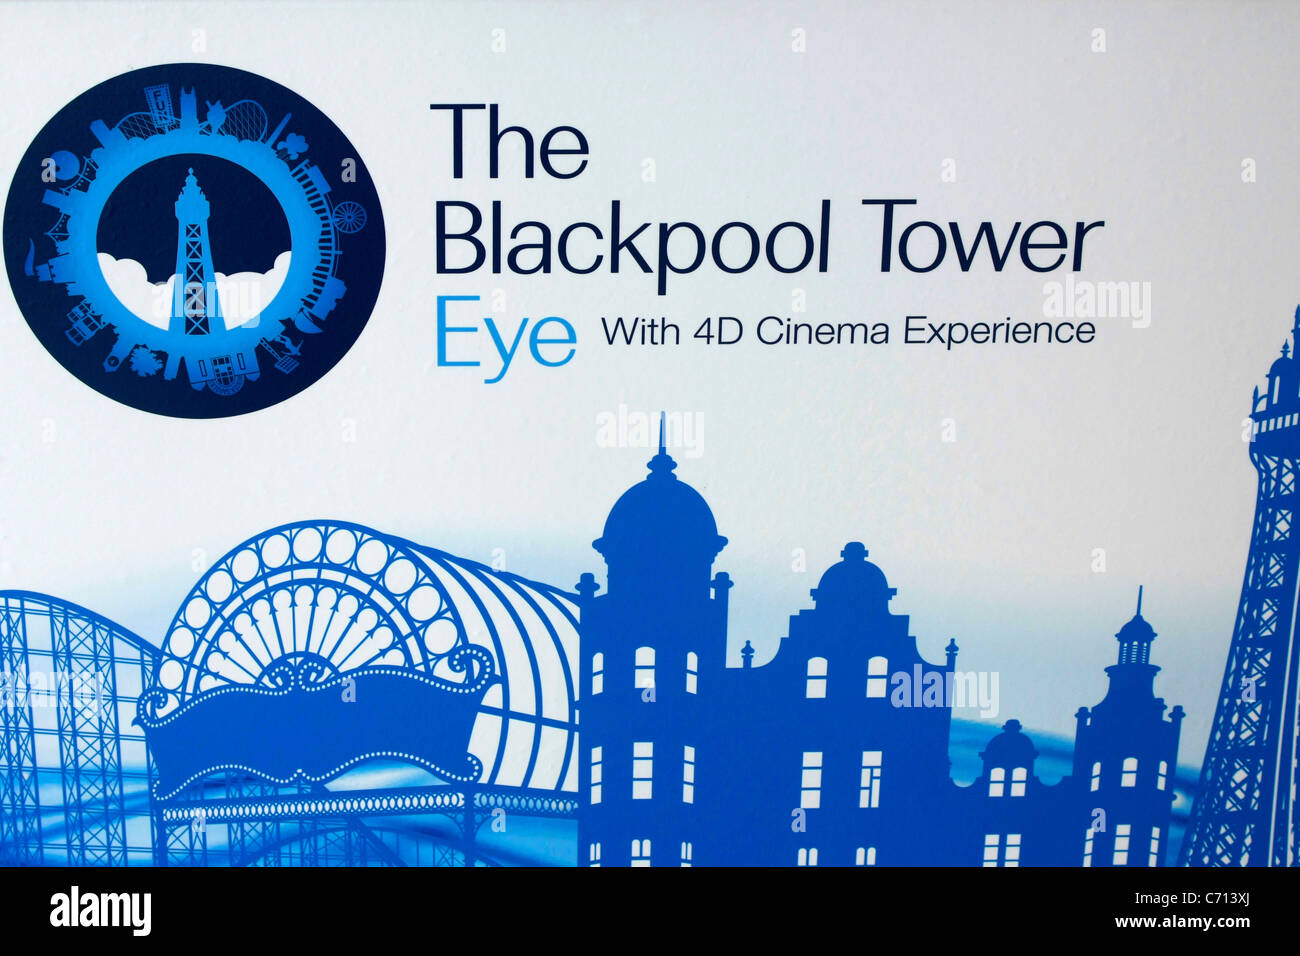 La tour de Blackpool et de l'Œil cinéma 4D Vidéo publicité Banque D'Images